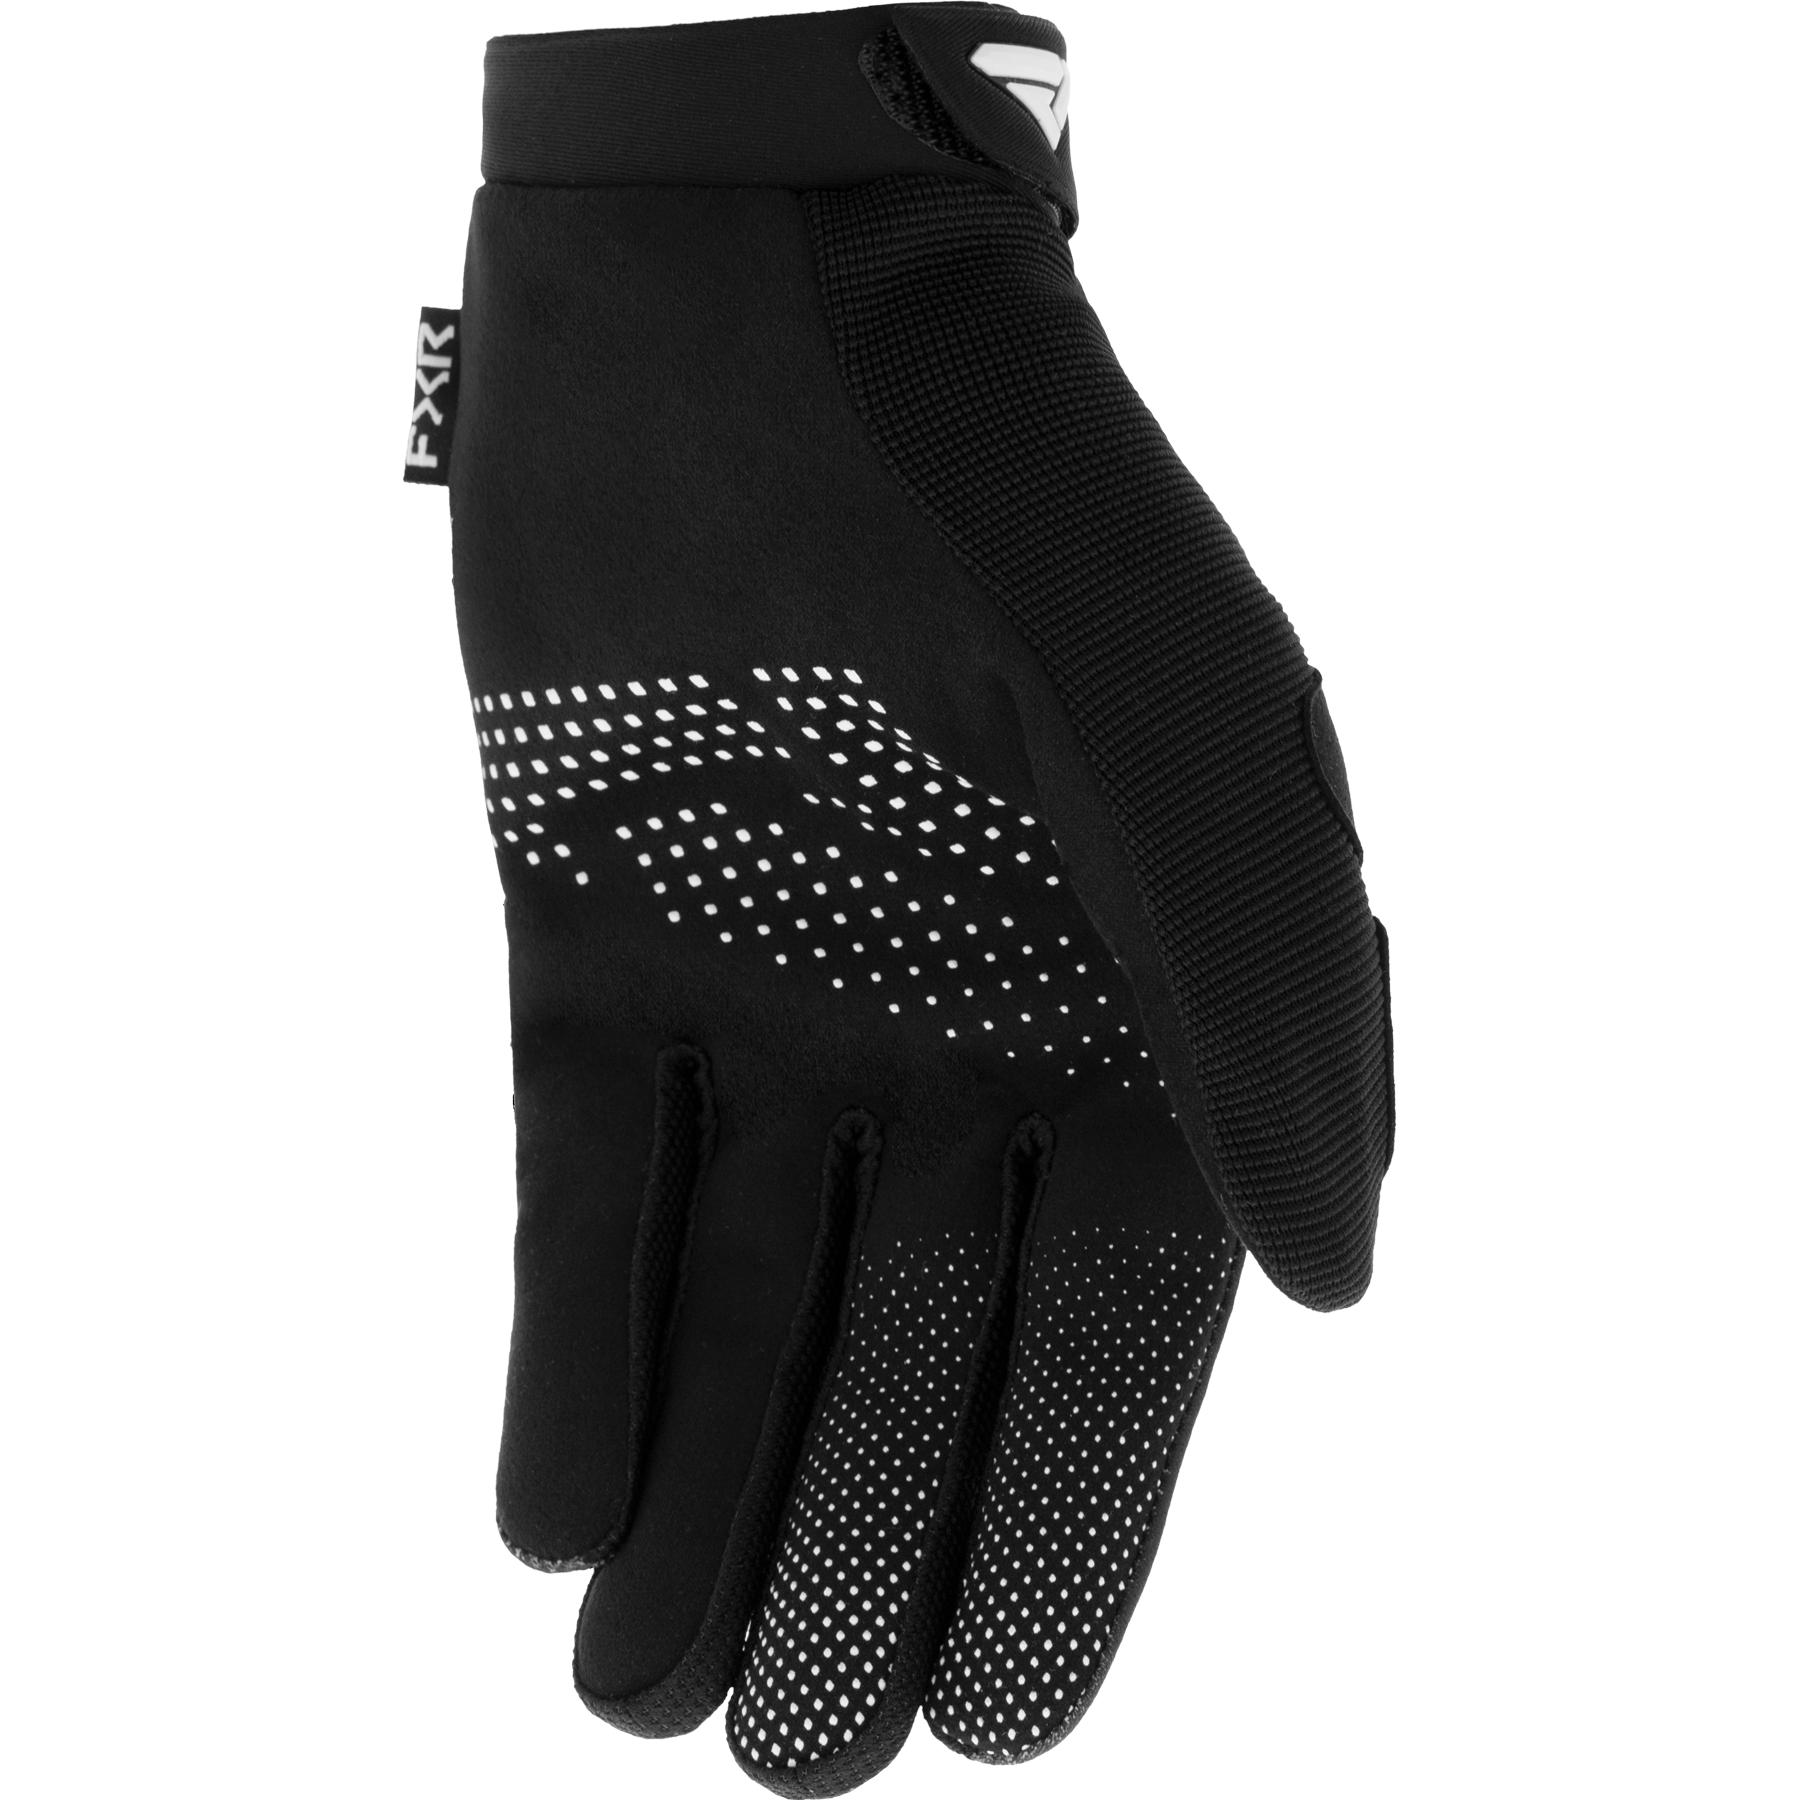 FXR Reflex MX Glove Black/White